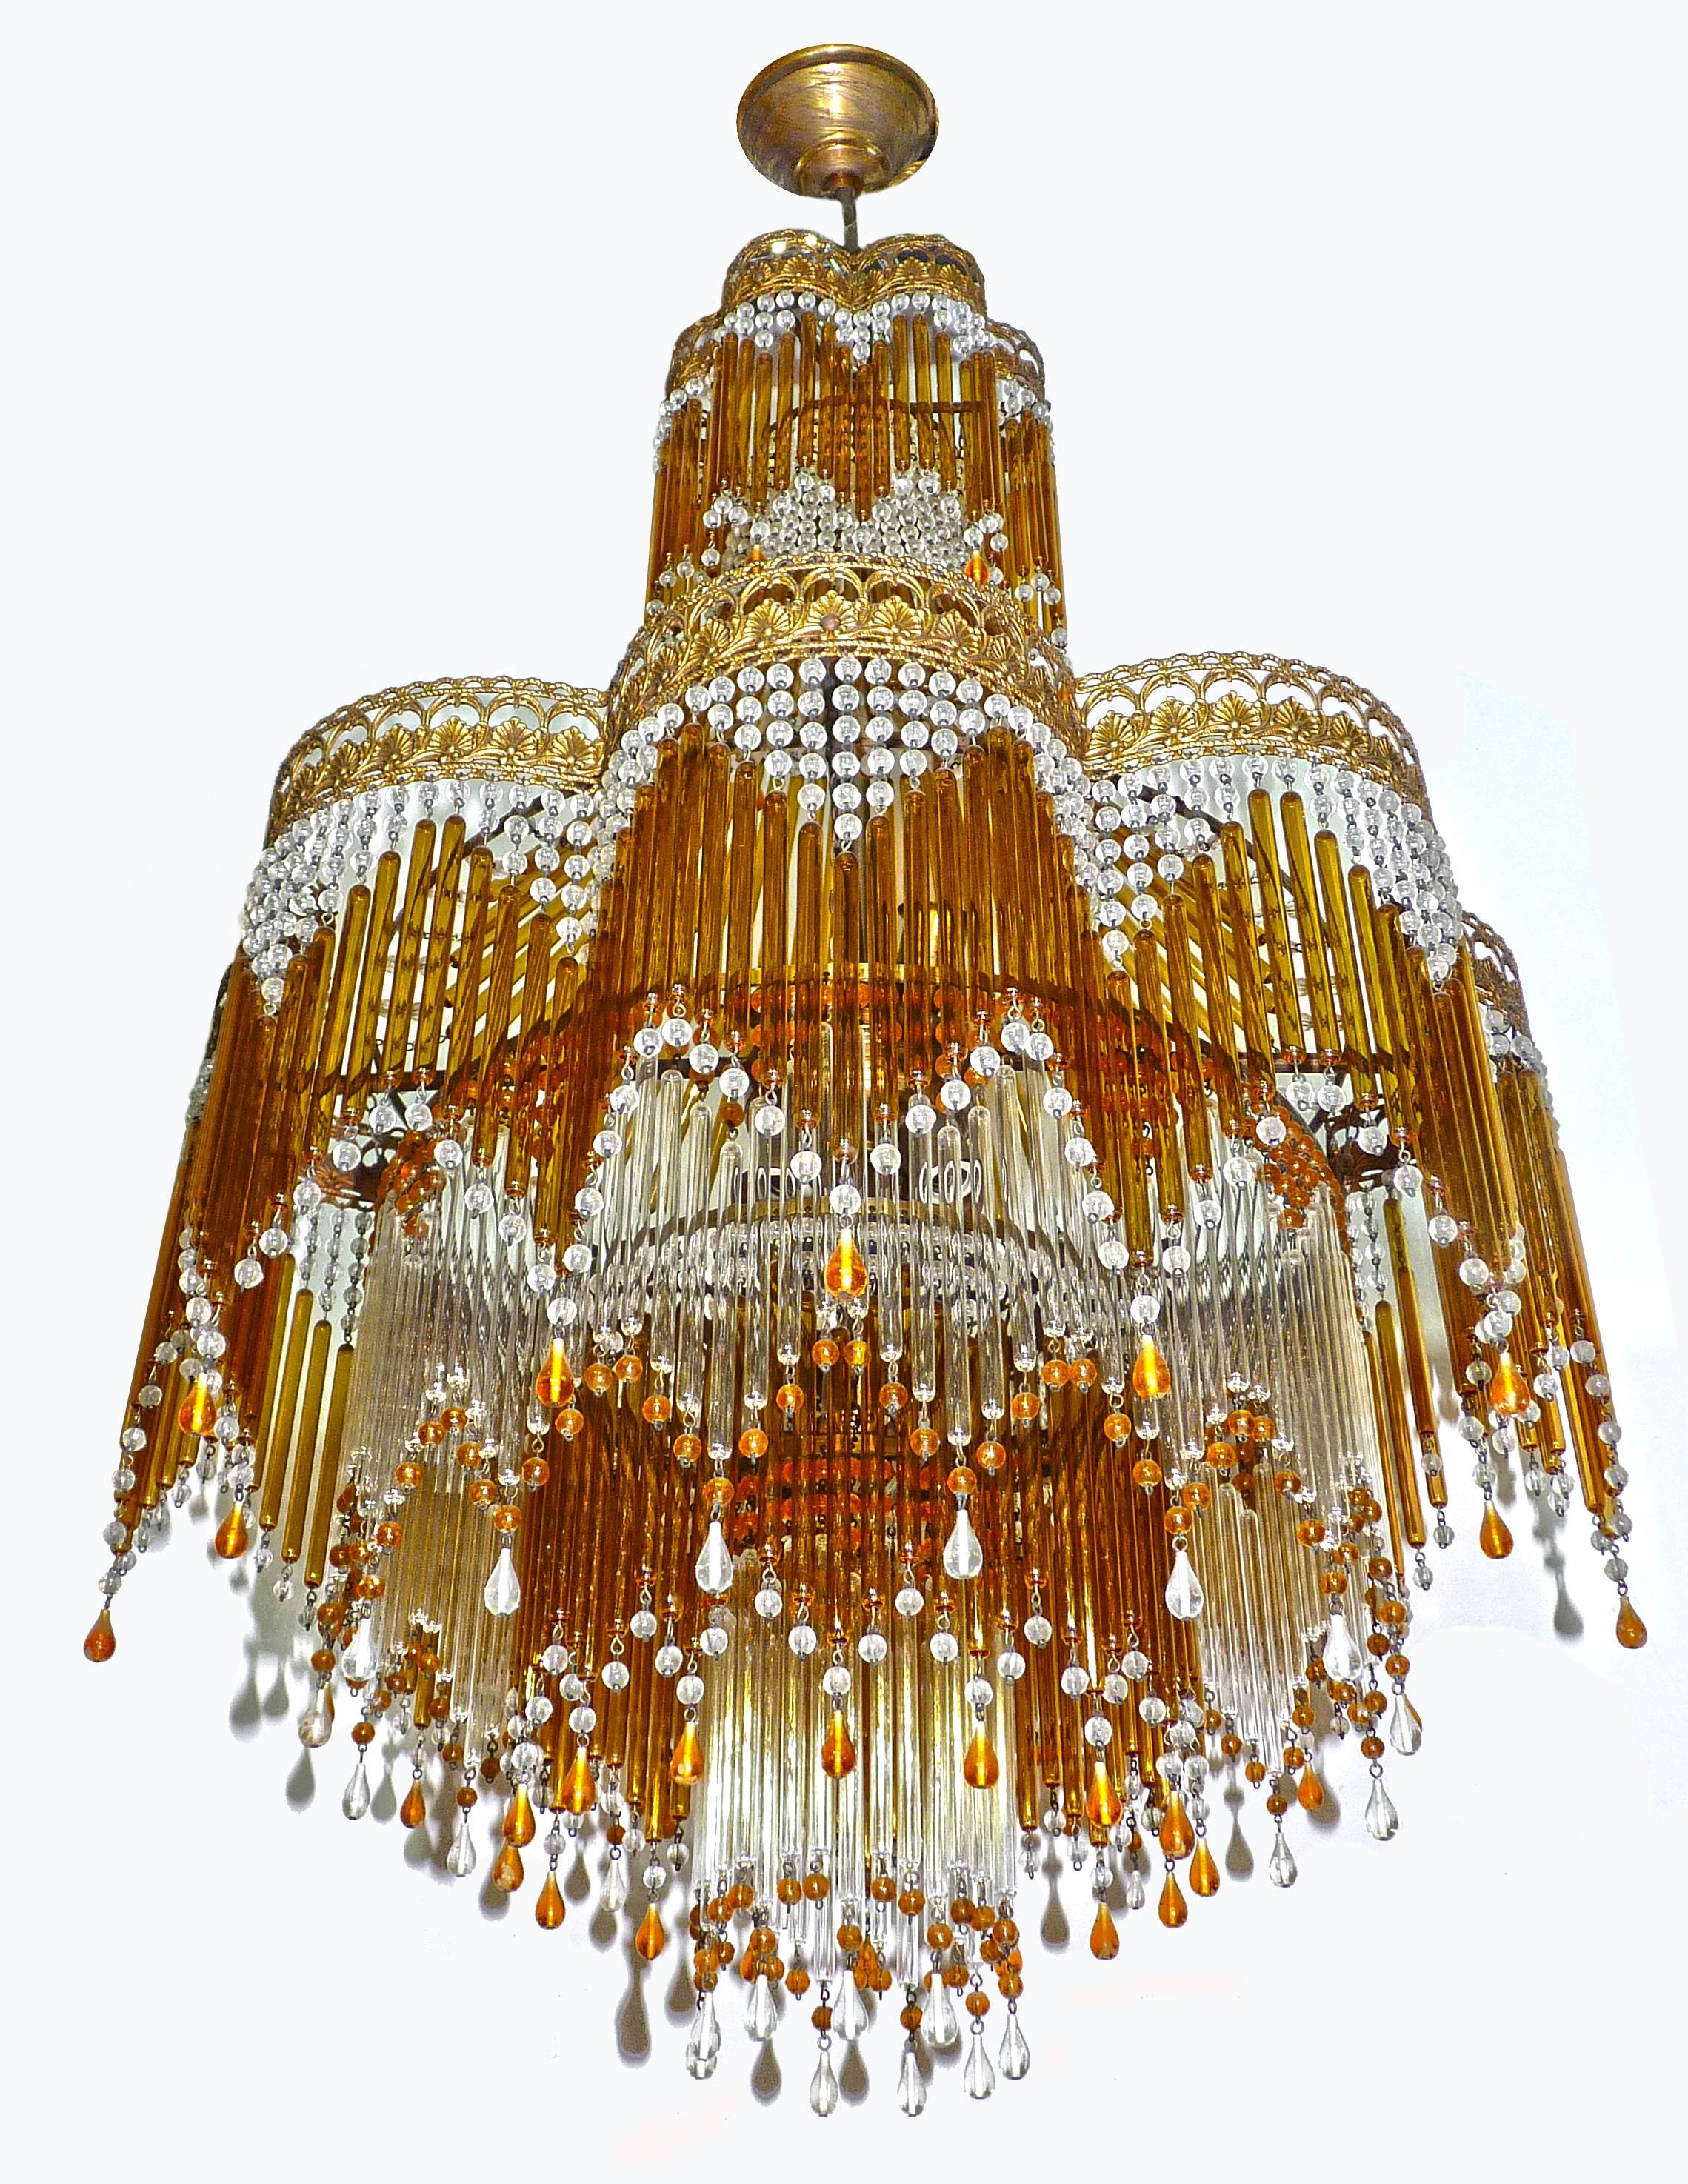 Hollywood Regency Italian Art Deco/Art Nouveau Amber & Clear Beaded Glass Fringe Murano Chandelier